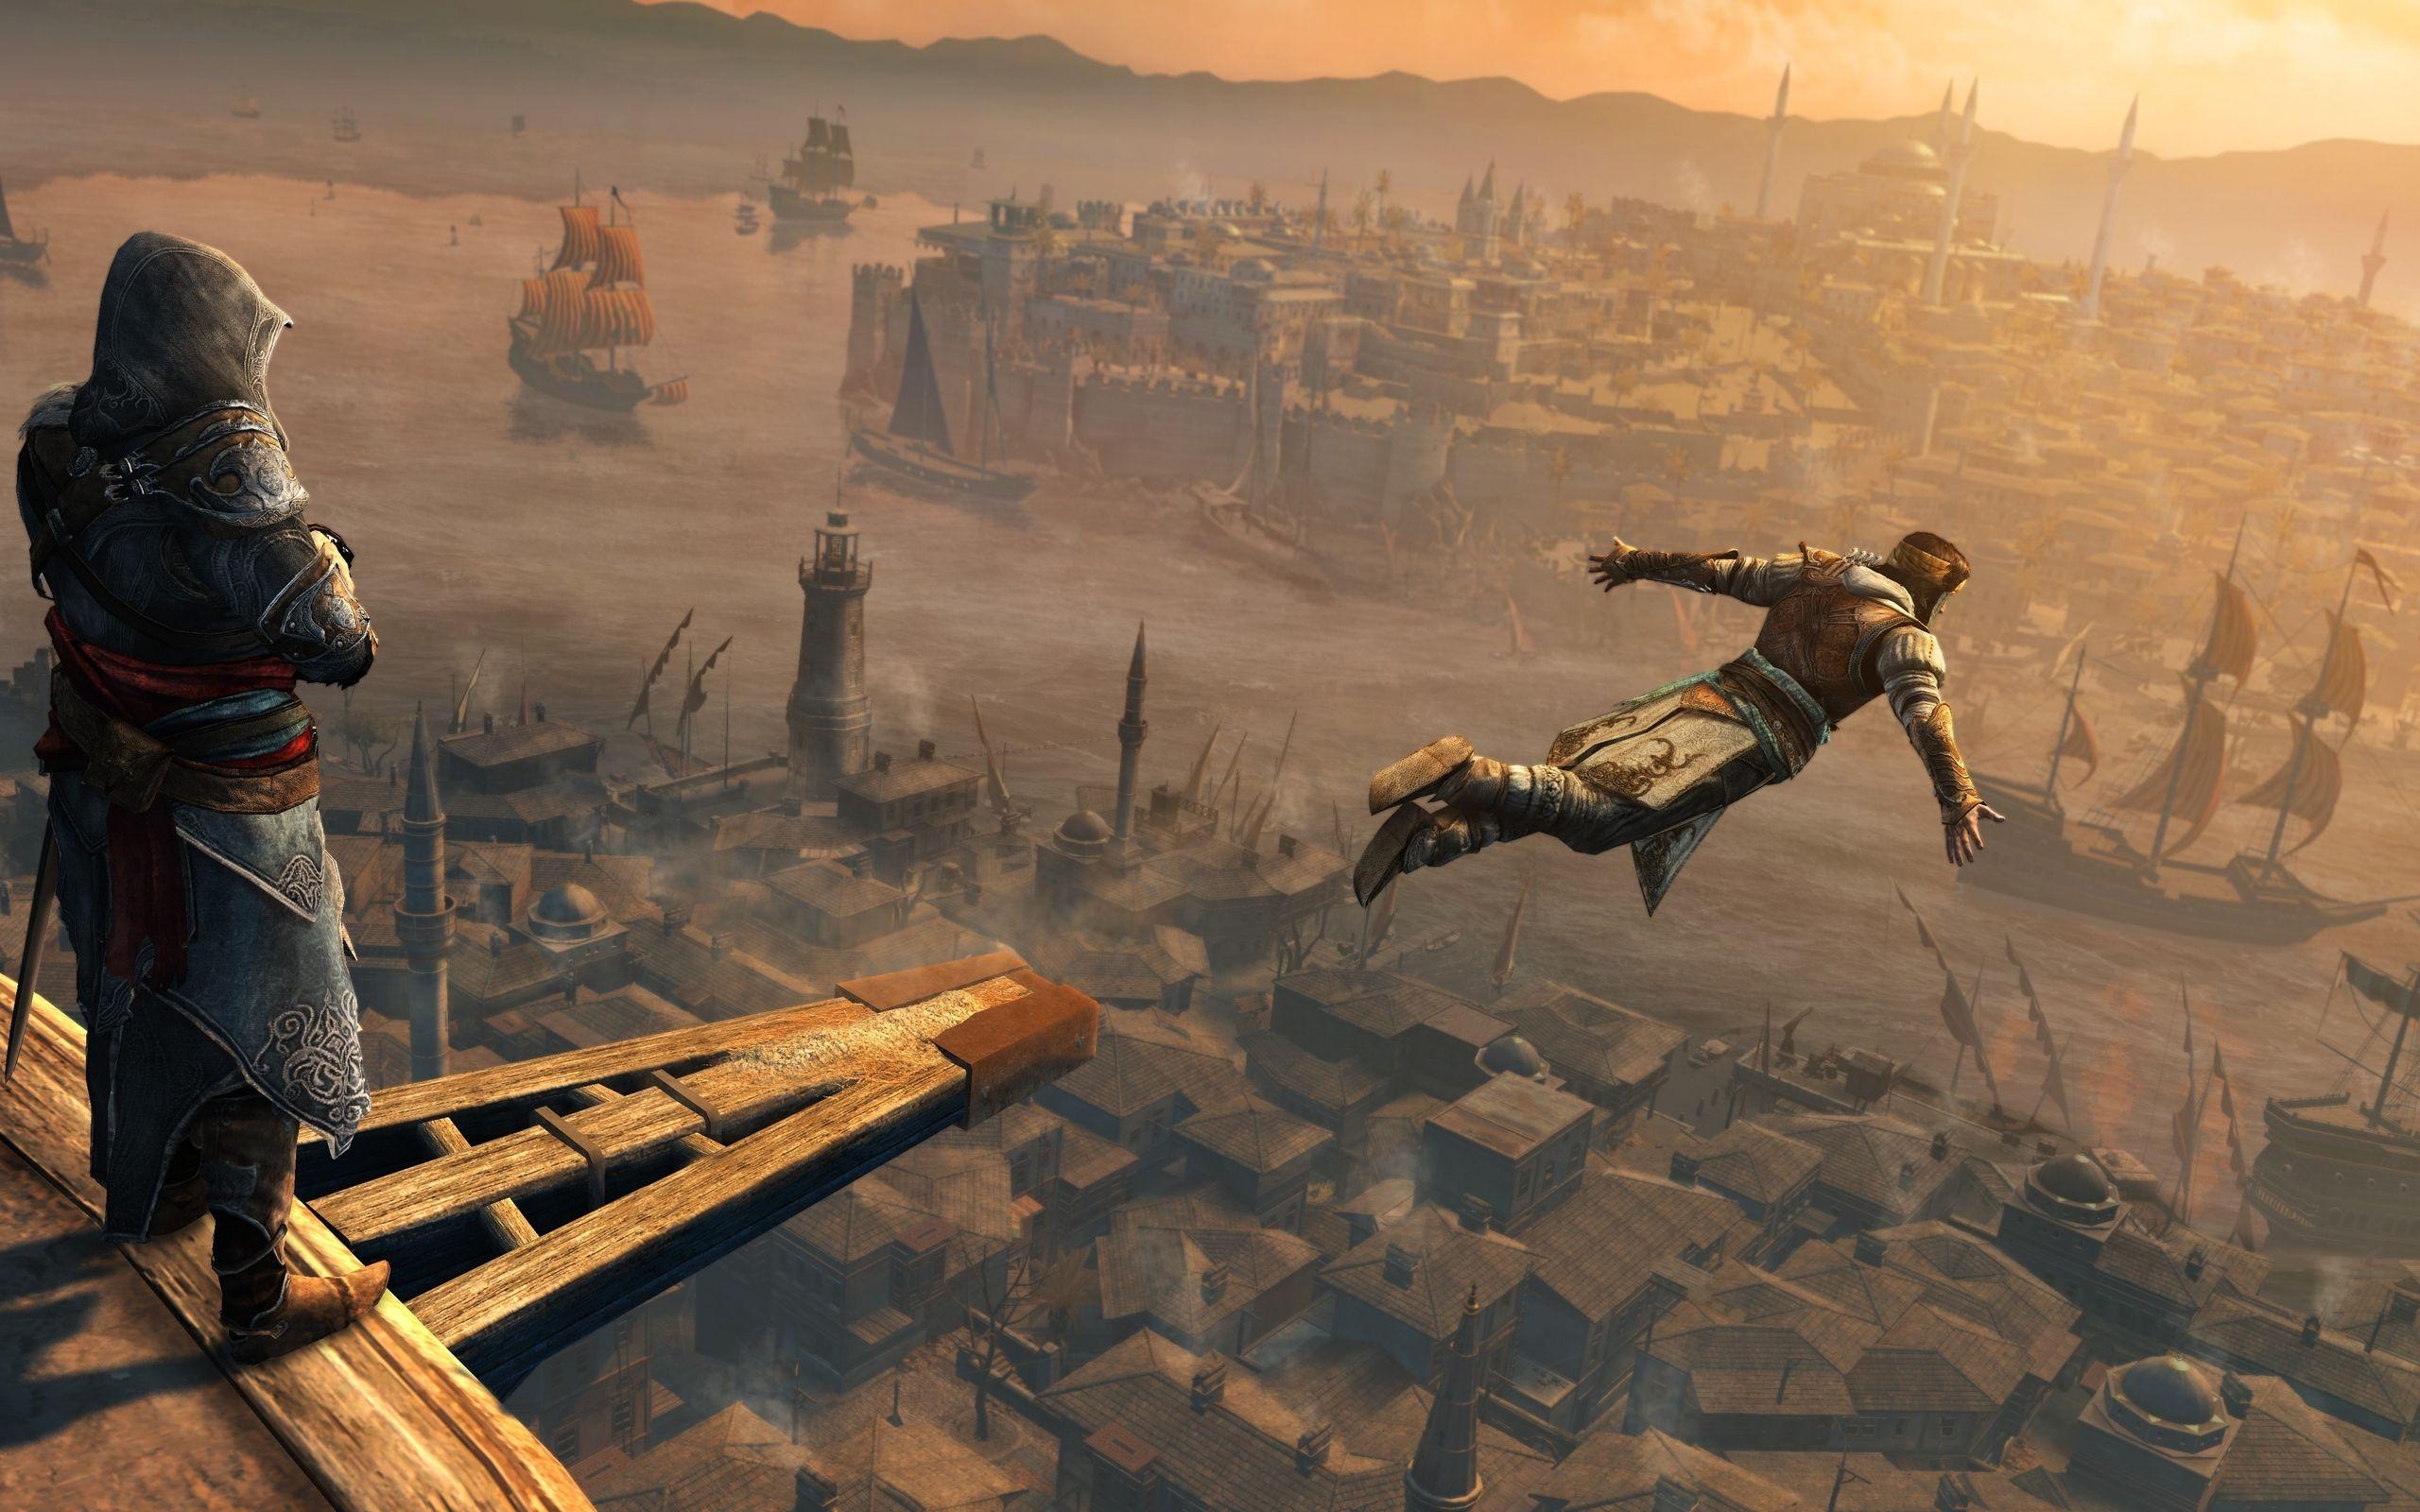 Assassin Creed Revelations Scene 1152 x 864 Wallpaper